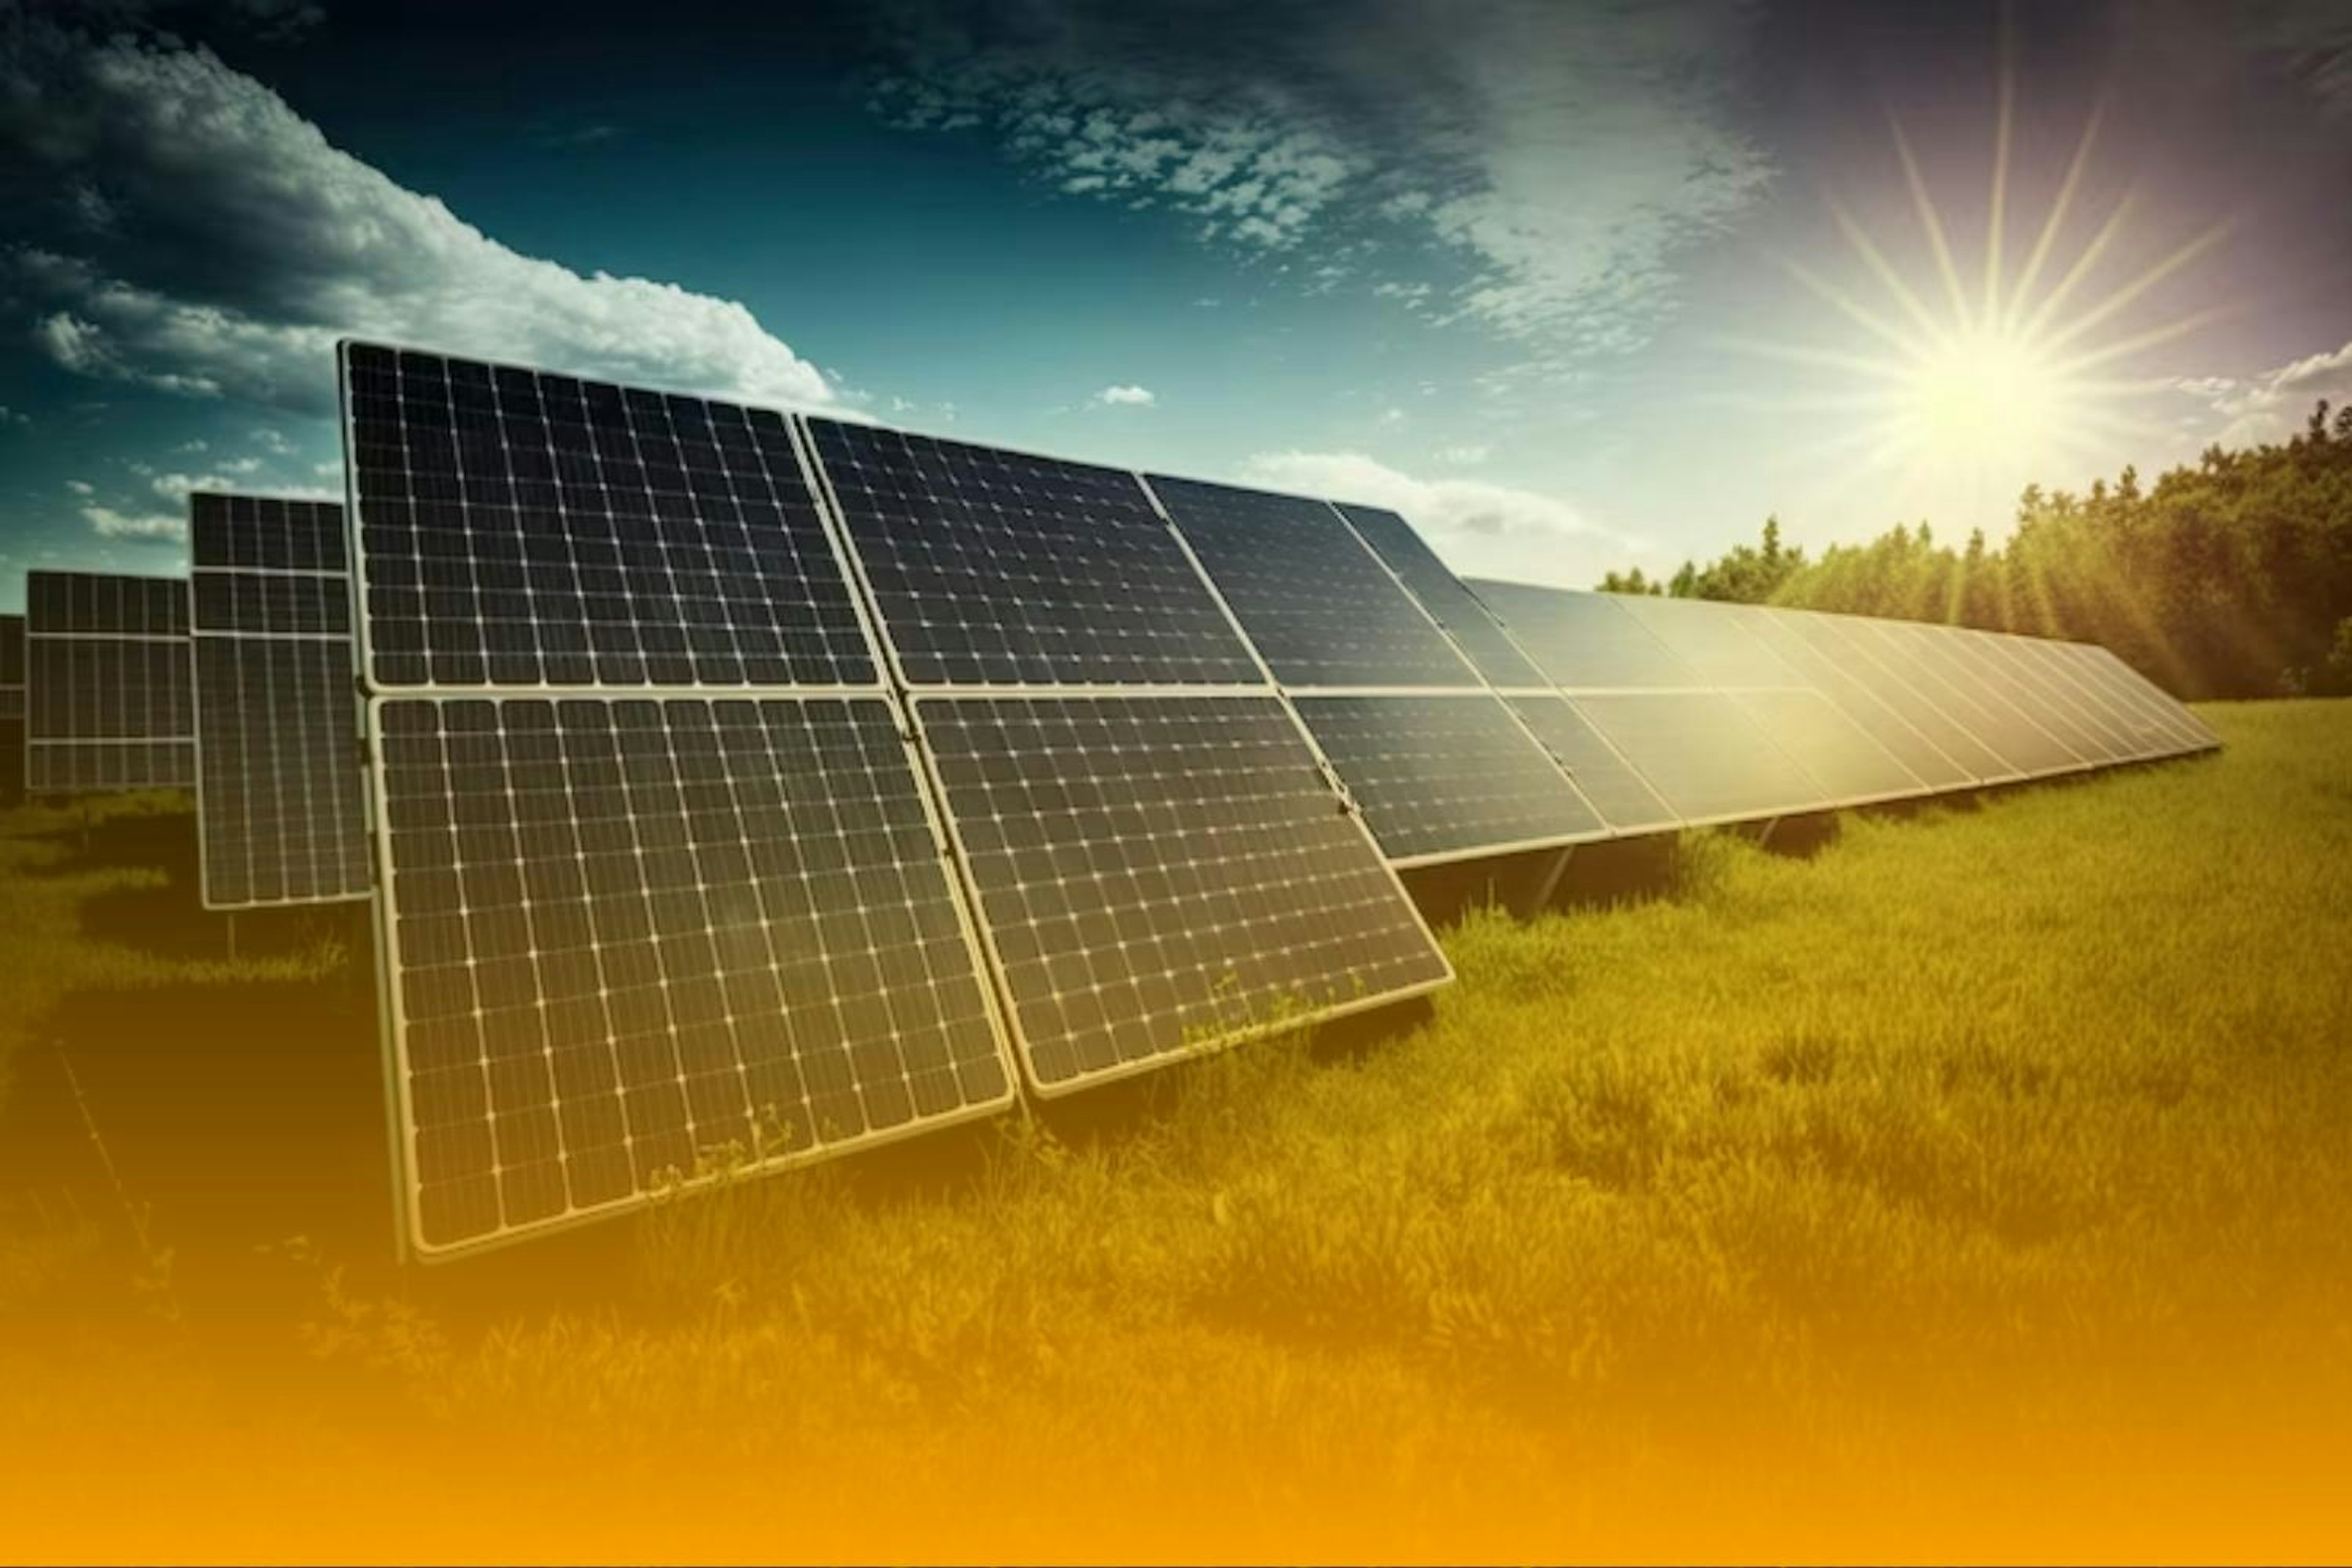 Platus Energia Solar - Te desafiamos a somar o valor gasto com a